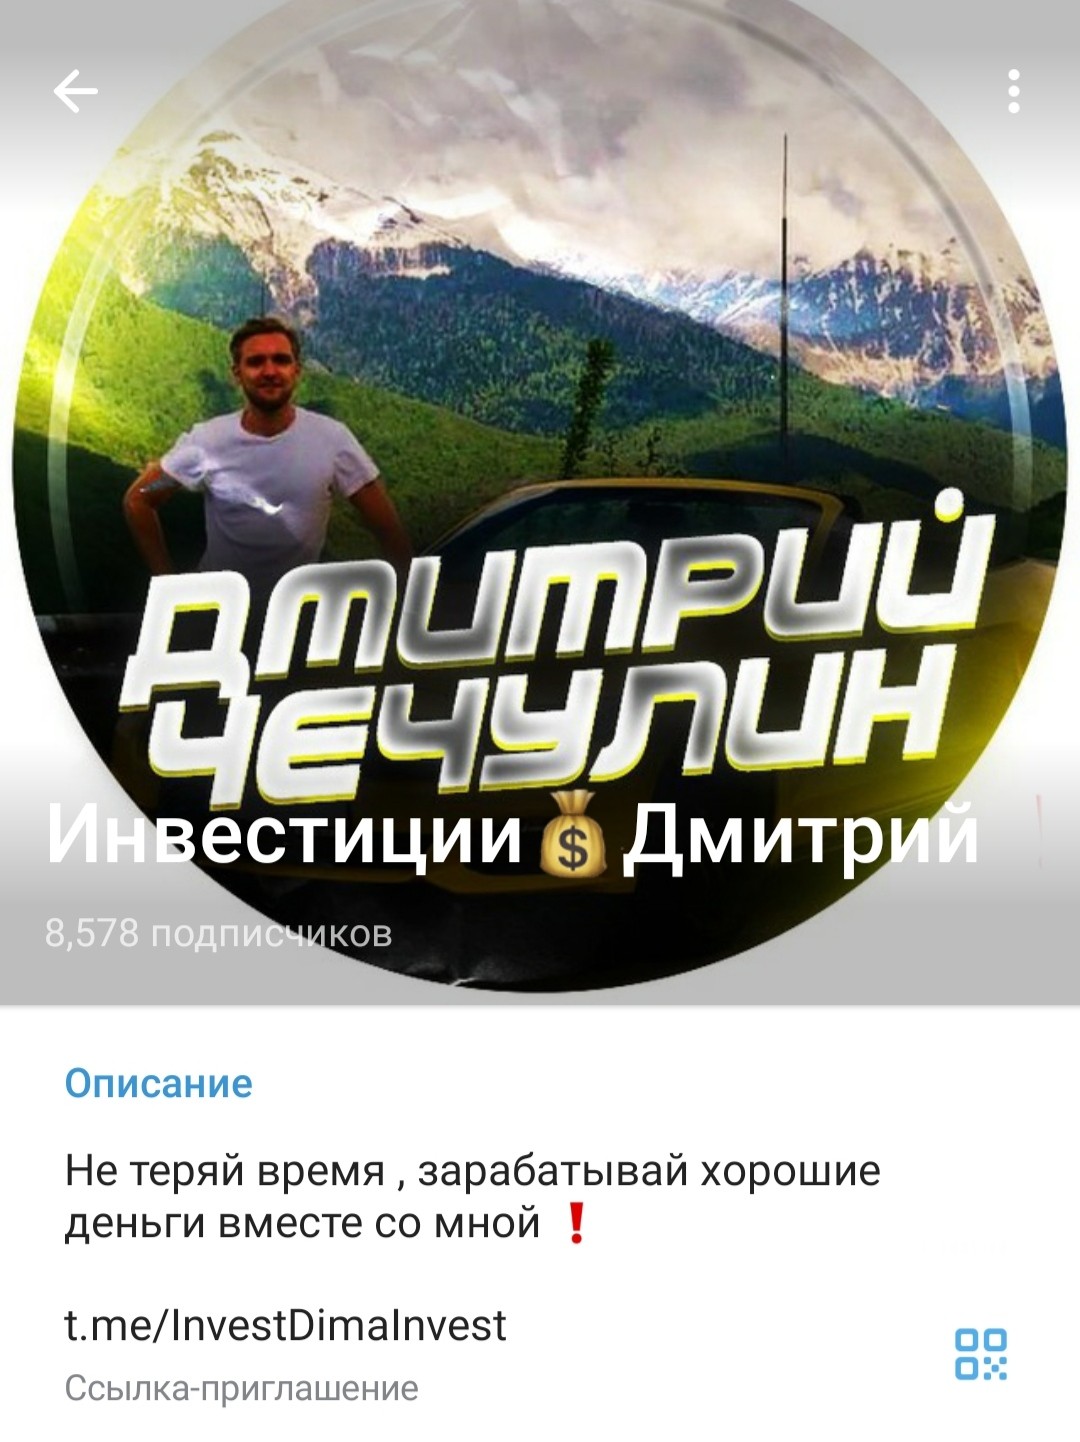 Дмитрий Чечулин телеграм